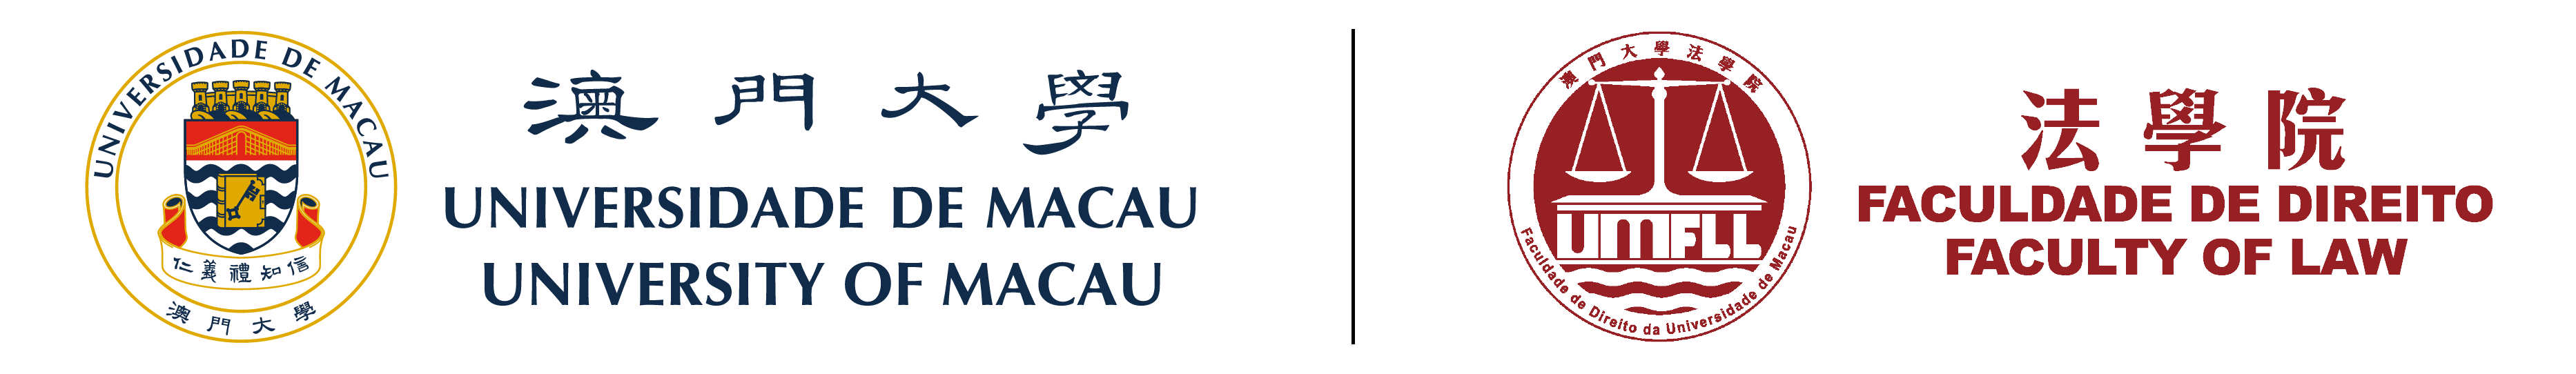 Faculdade De Direito | Universidade de Macau Logo